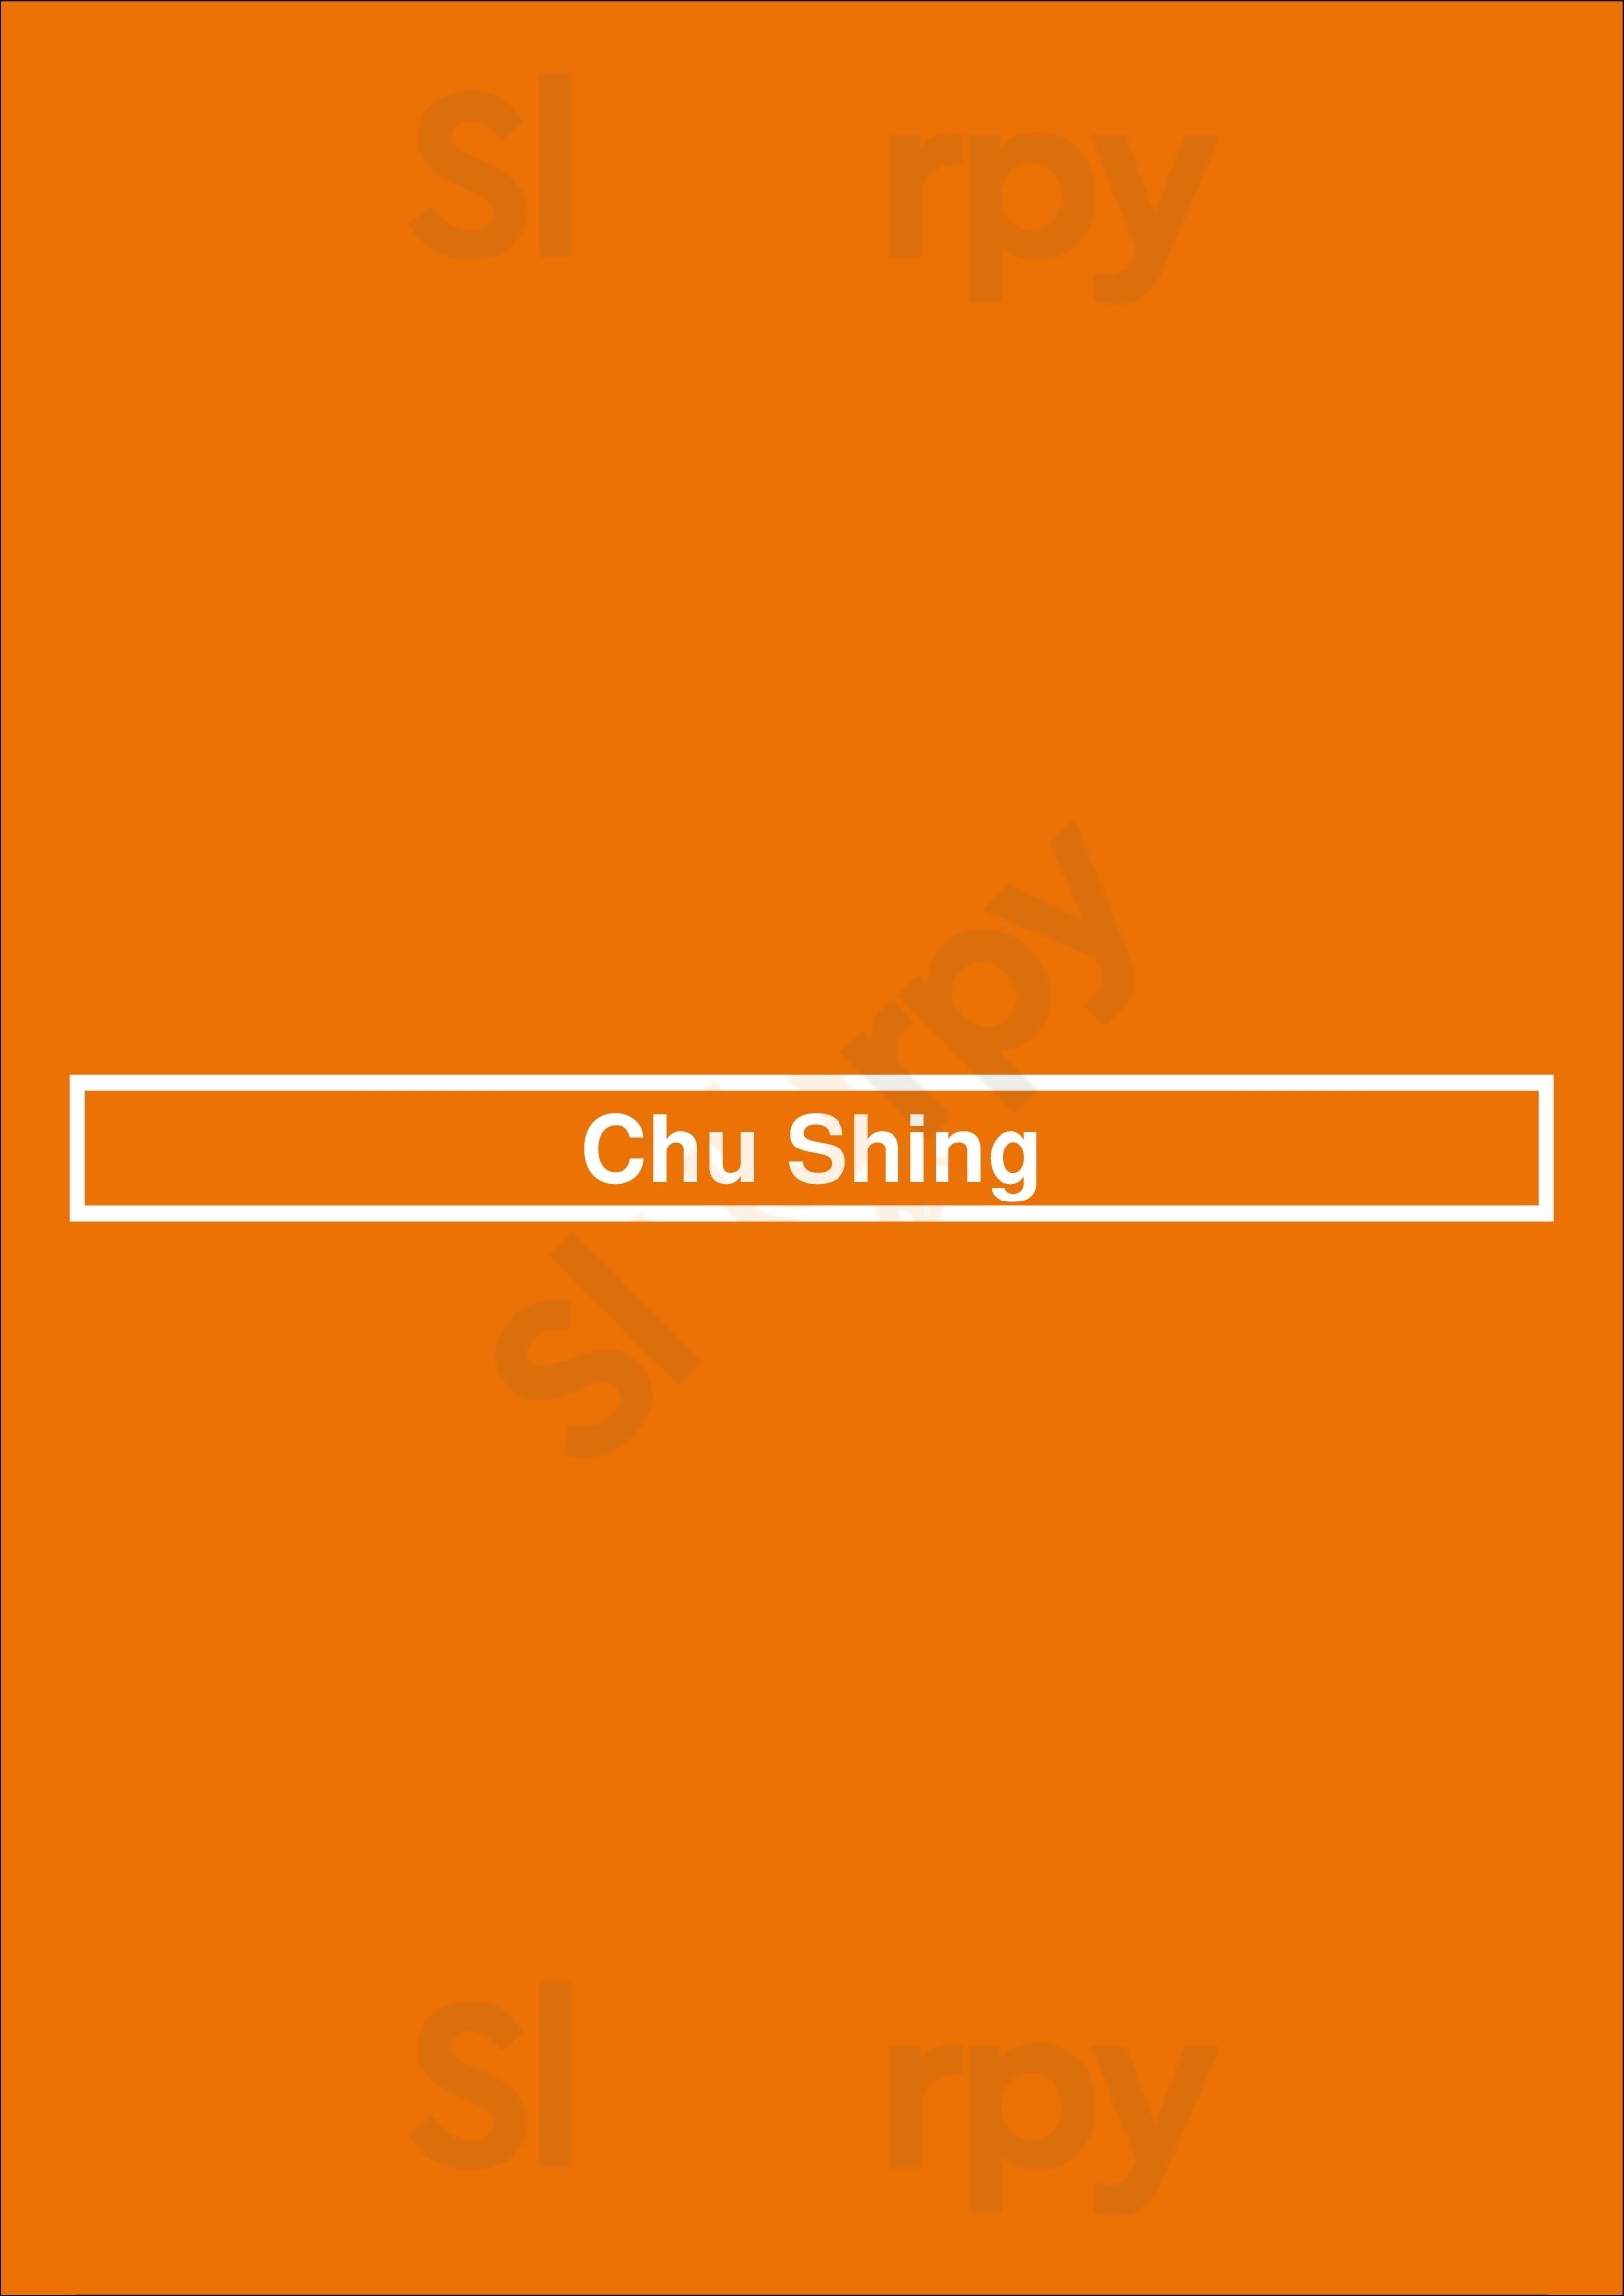 Chu Shing Ottawa Menu - 1